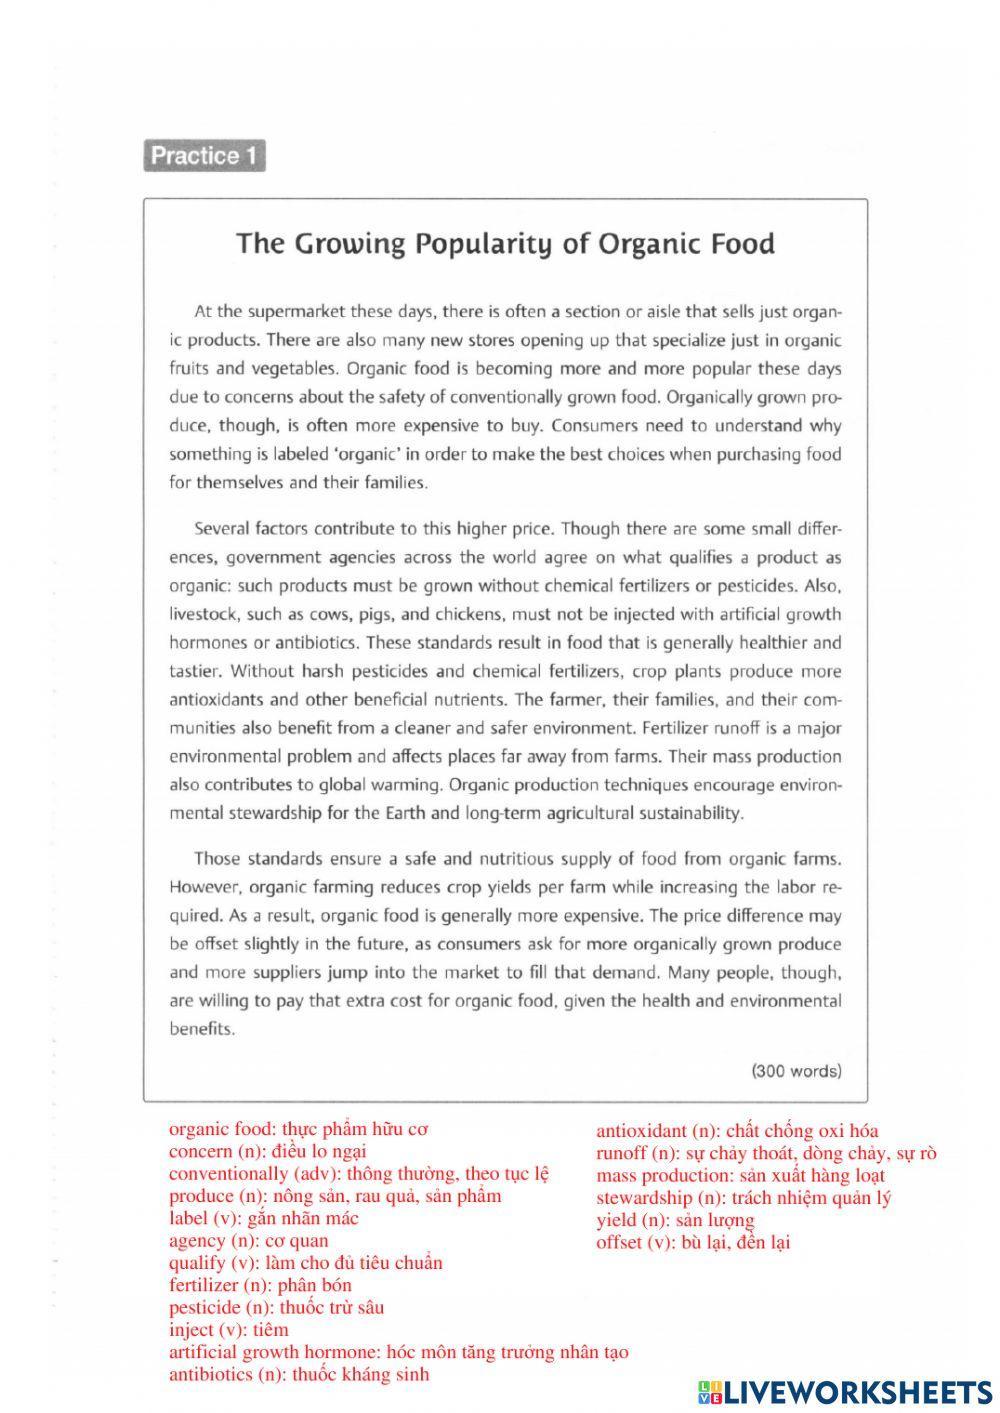 IELTS Reading - Organic food worksheet | Live Worksheets